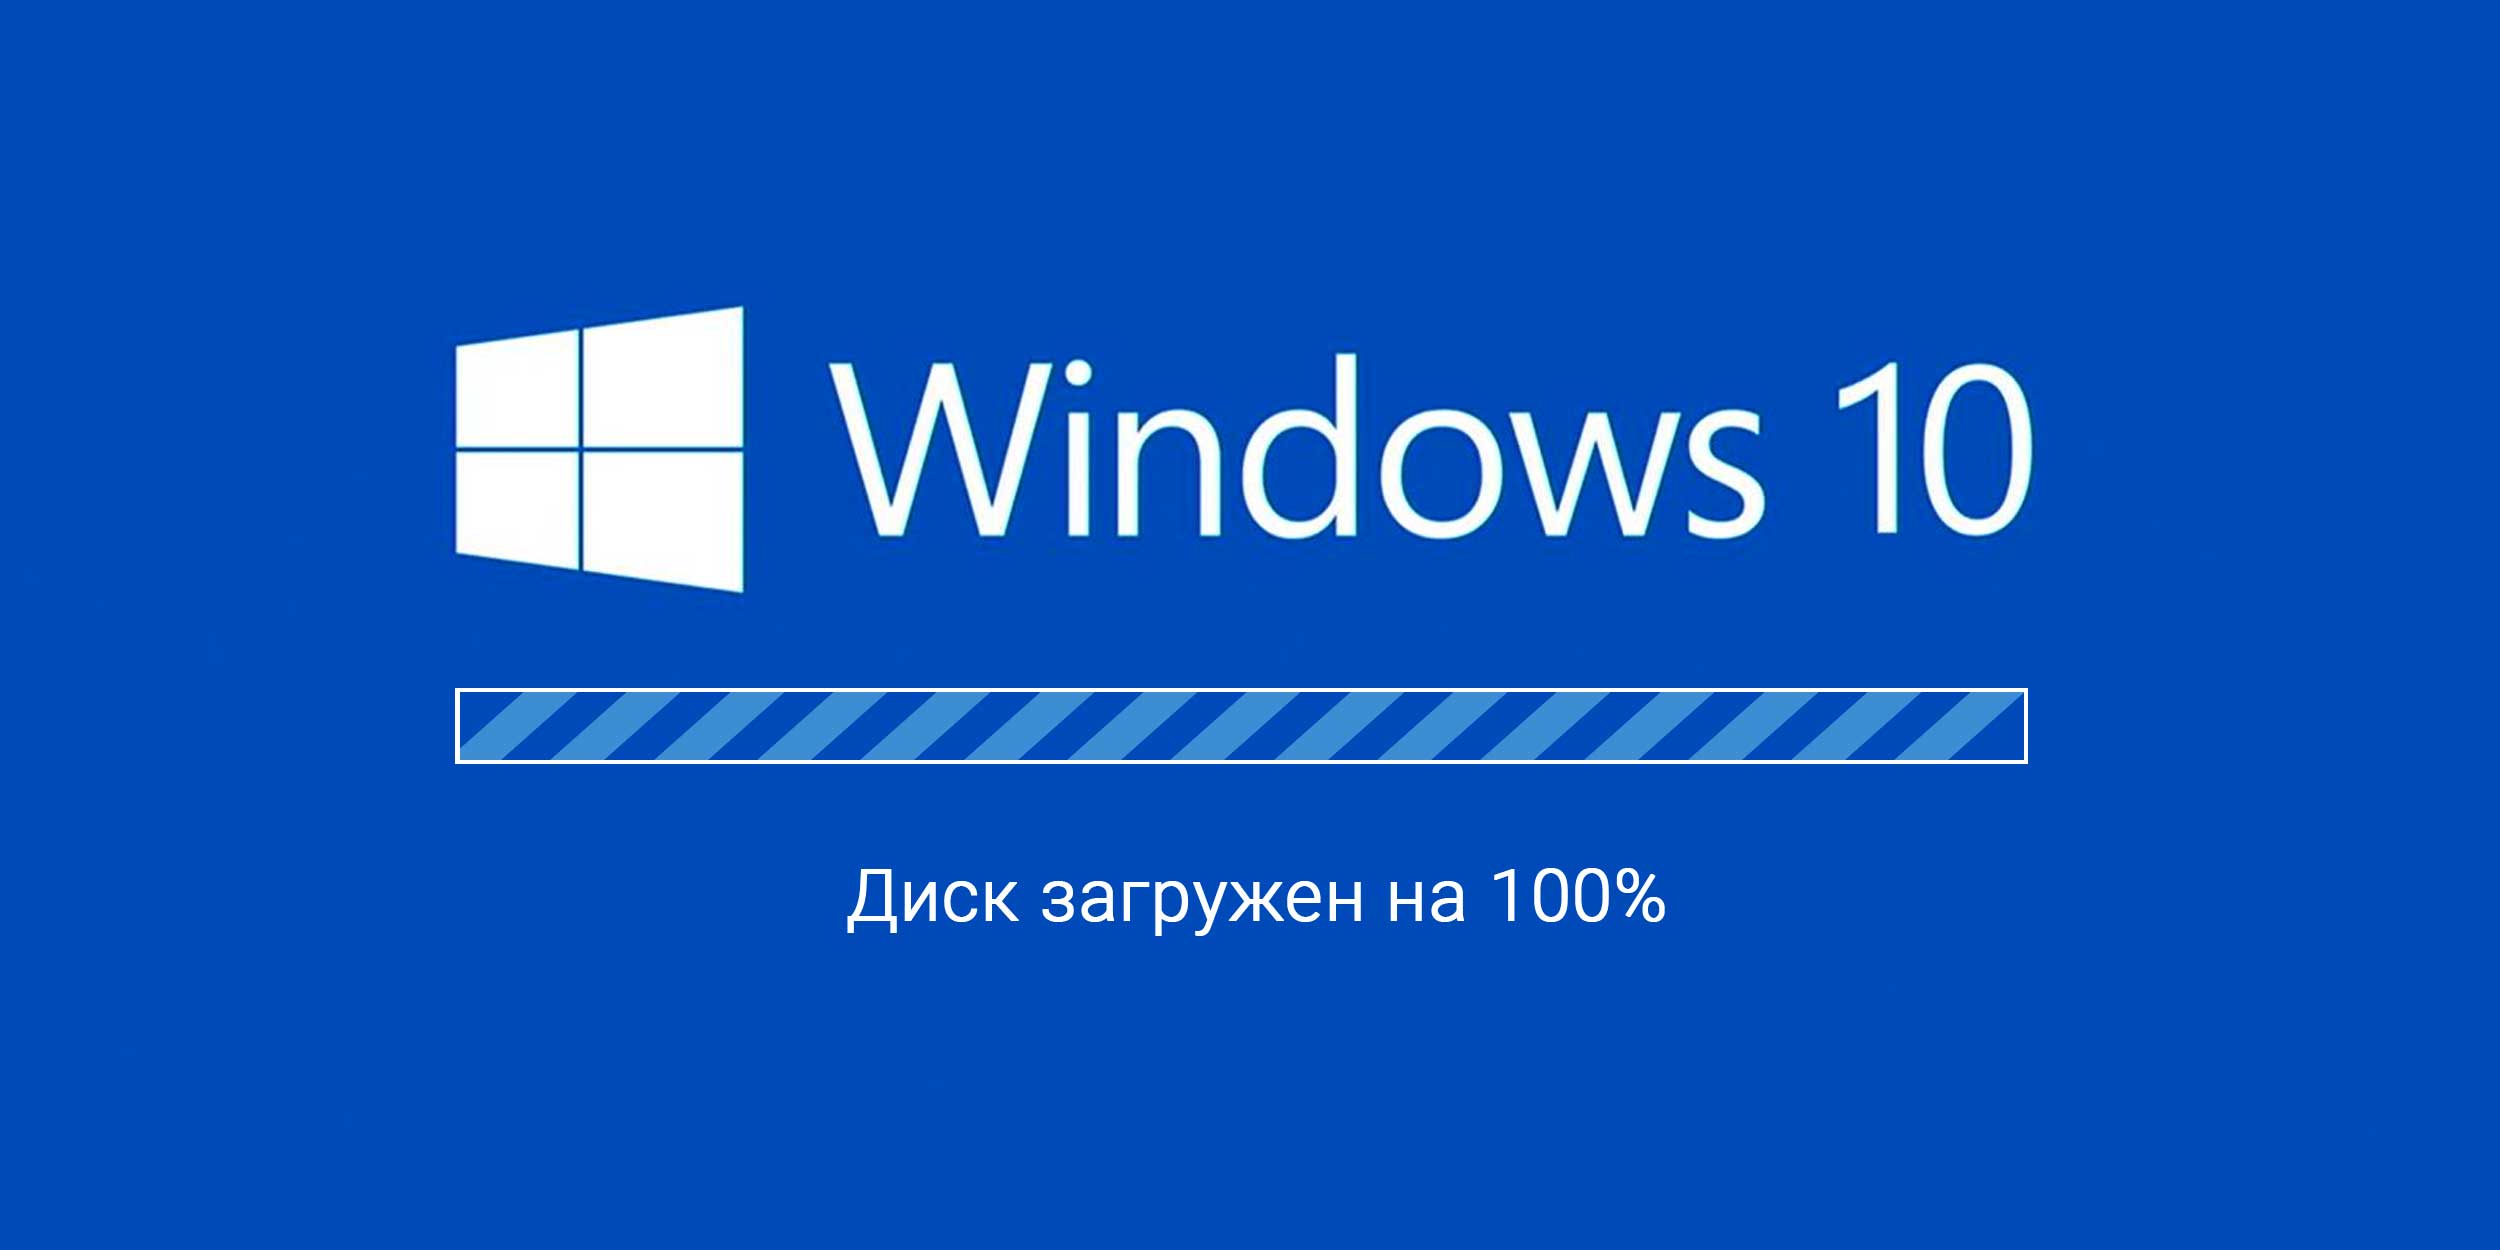 Что делать, если жесткий диск загружен на % (Windows 10) | Пикабу